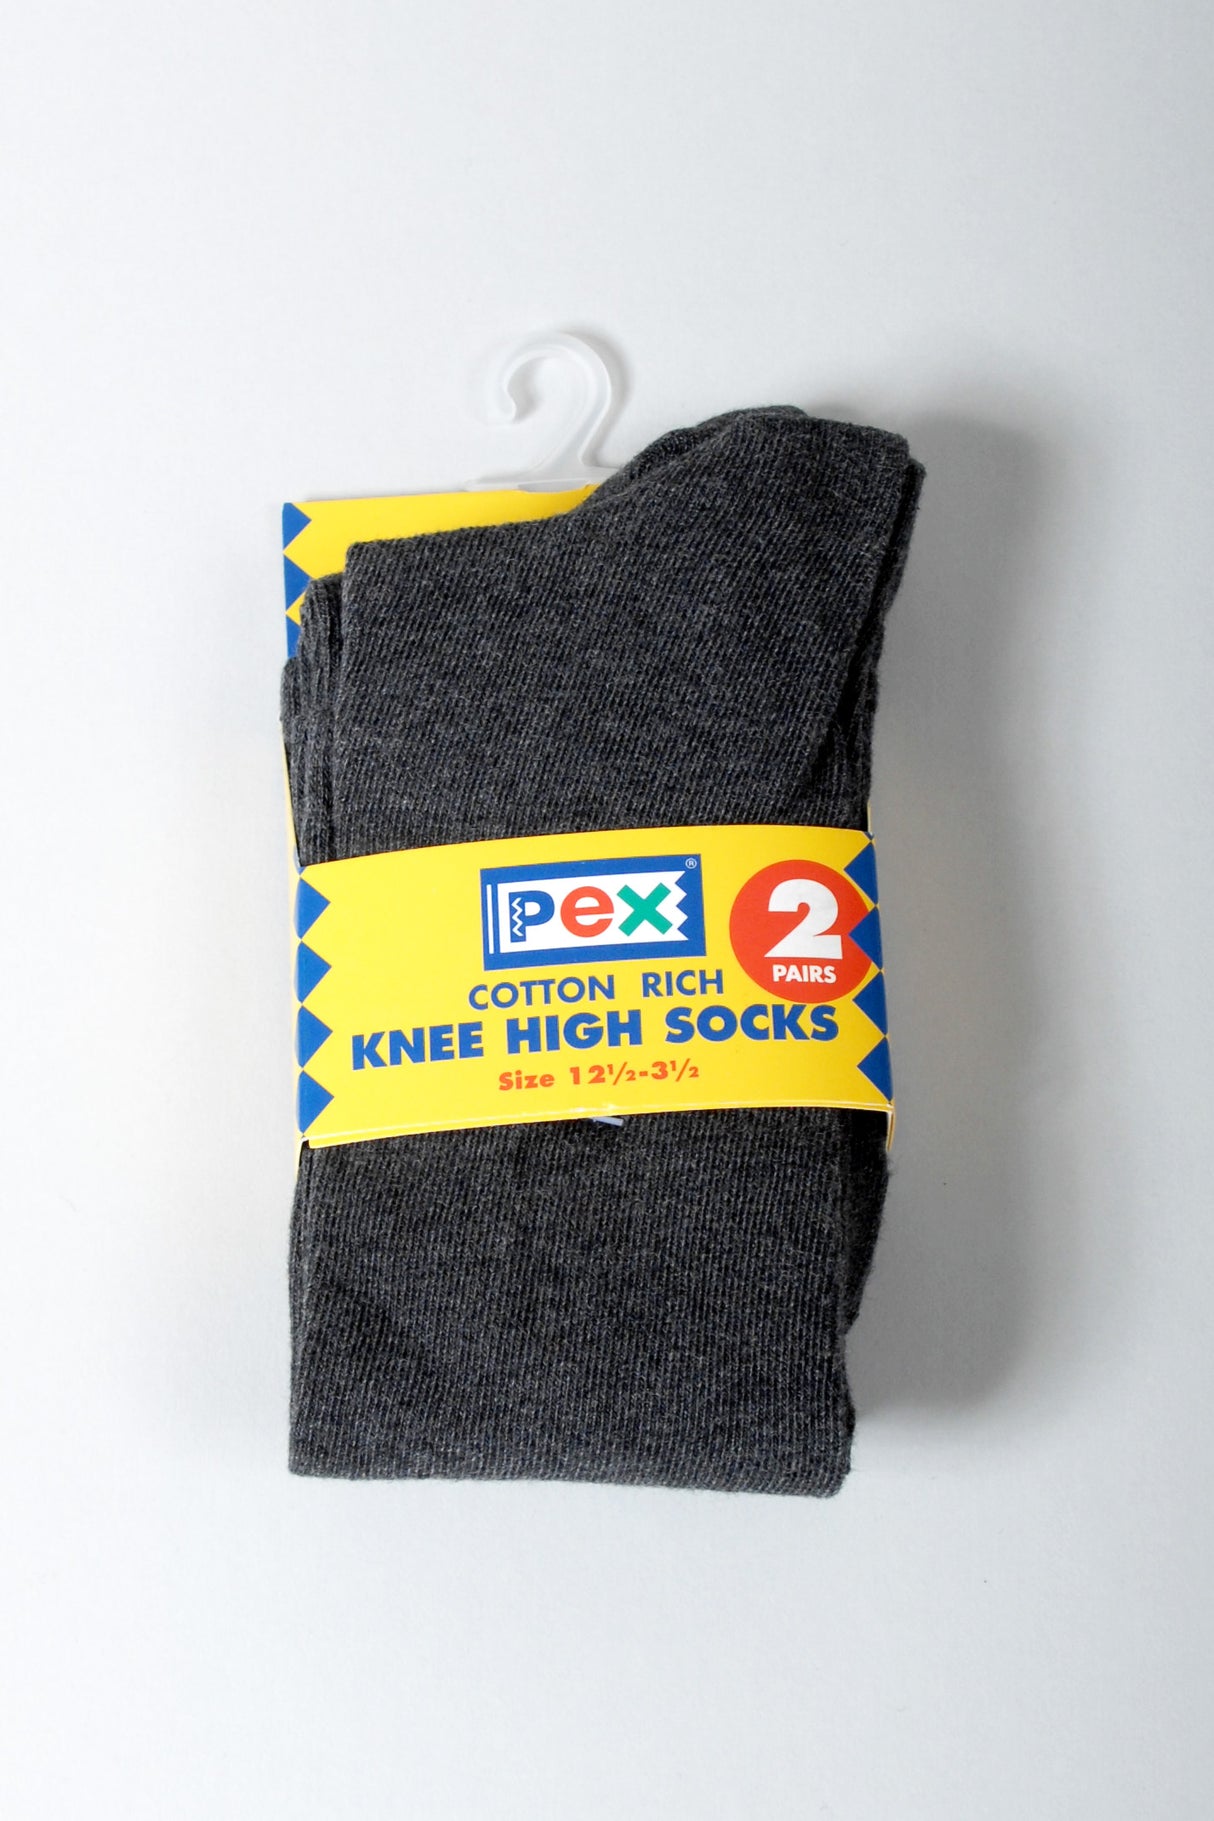 Charcoal Grey Knee Socks.  2 Pair Pack.